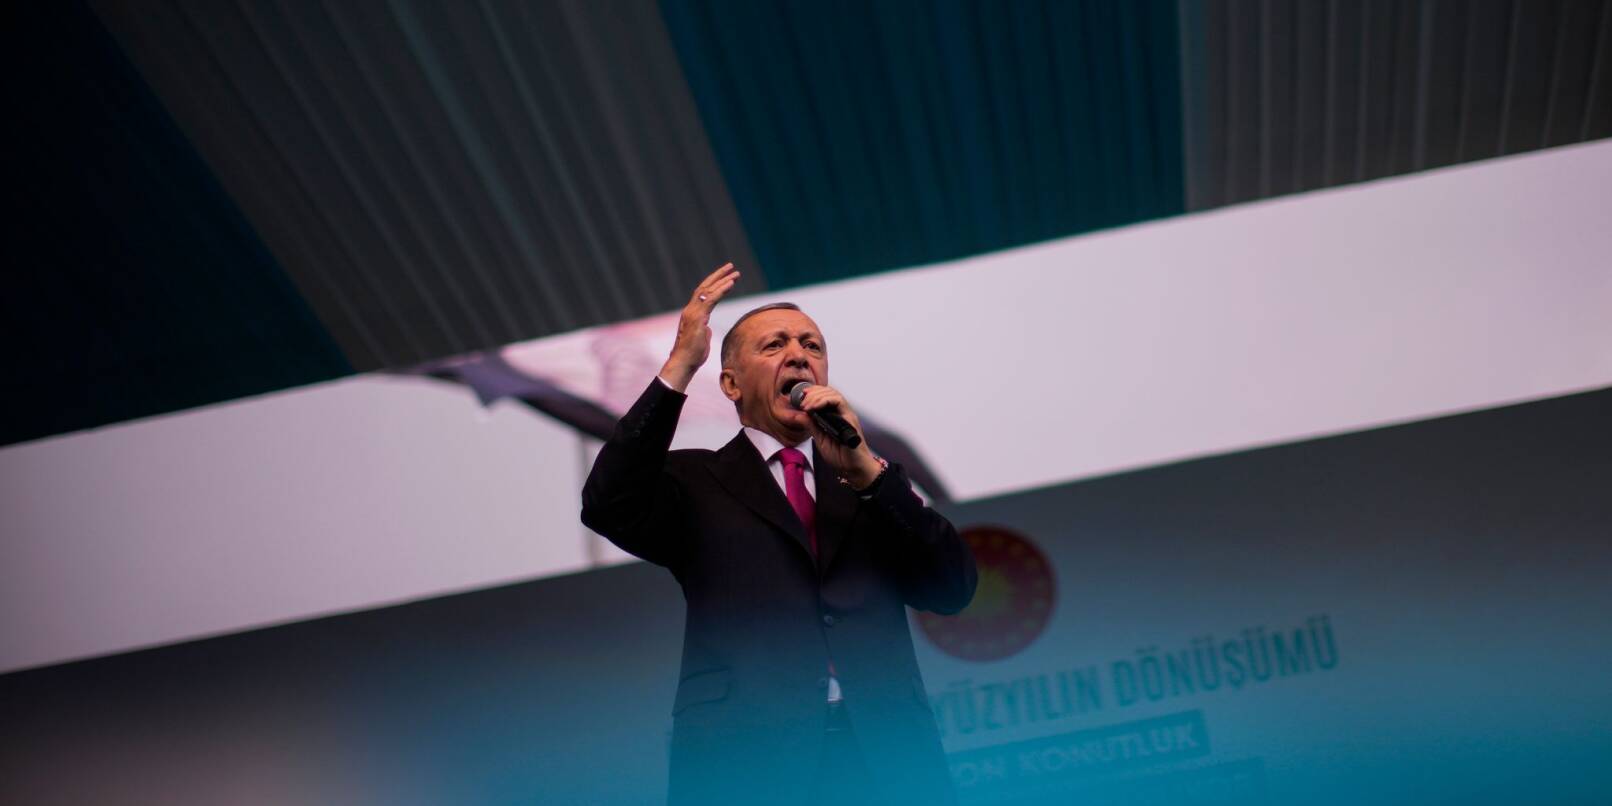 Wegen gesundheitlicher Probleme musste ein Live-Interview mit dem türkischen Präsidenten Recep Tayyip Erdogan abgebrochen werden.